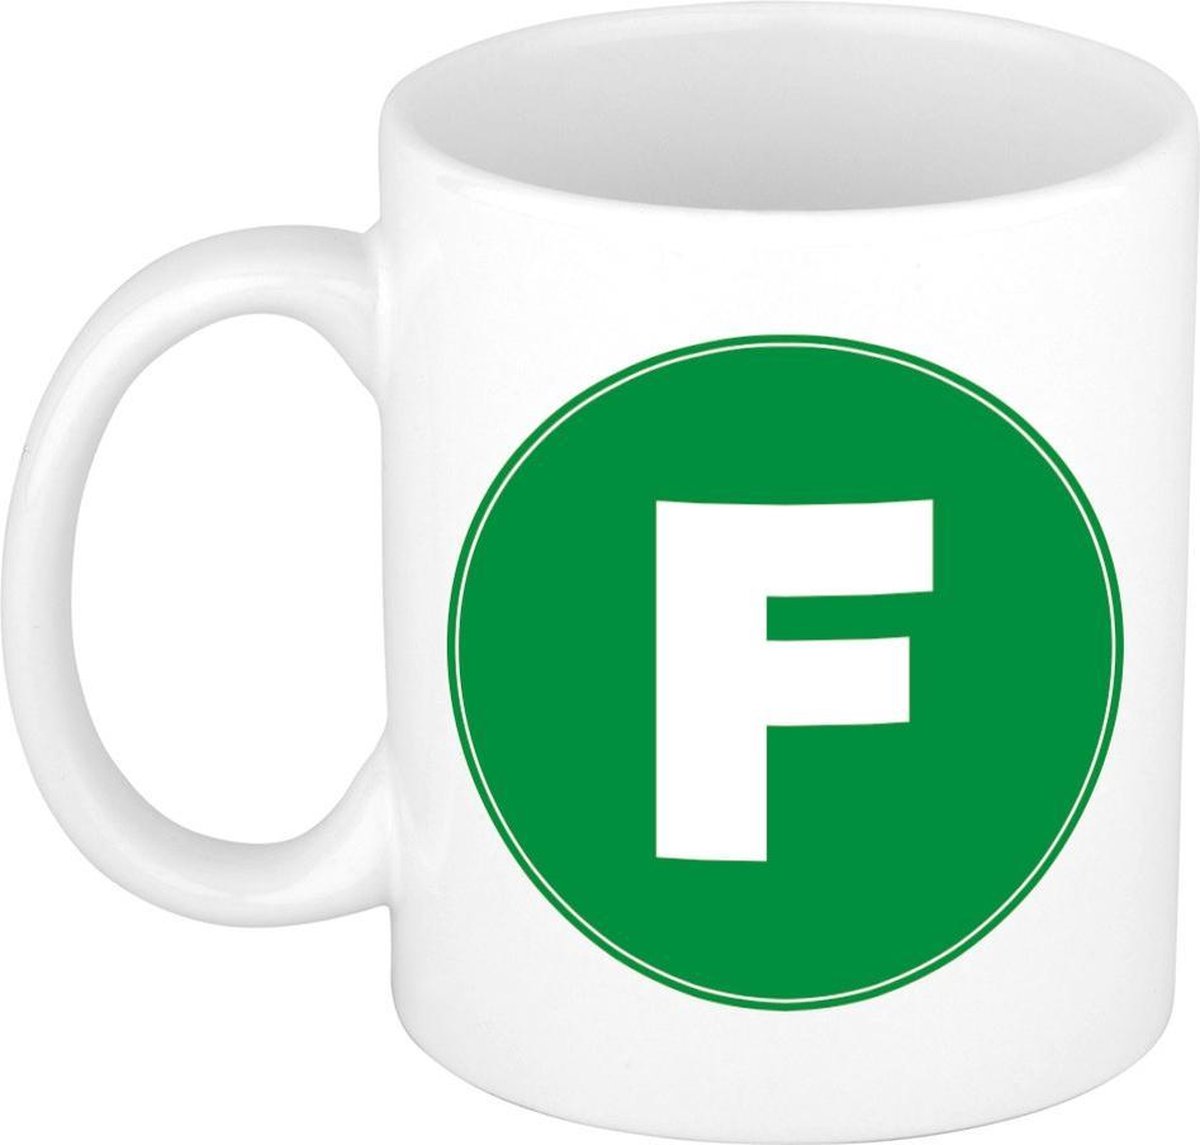 Mok / beker met de letter F groene bedrukking voor het maken van een naam / woord of team